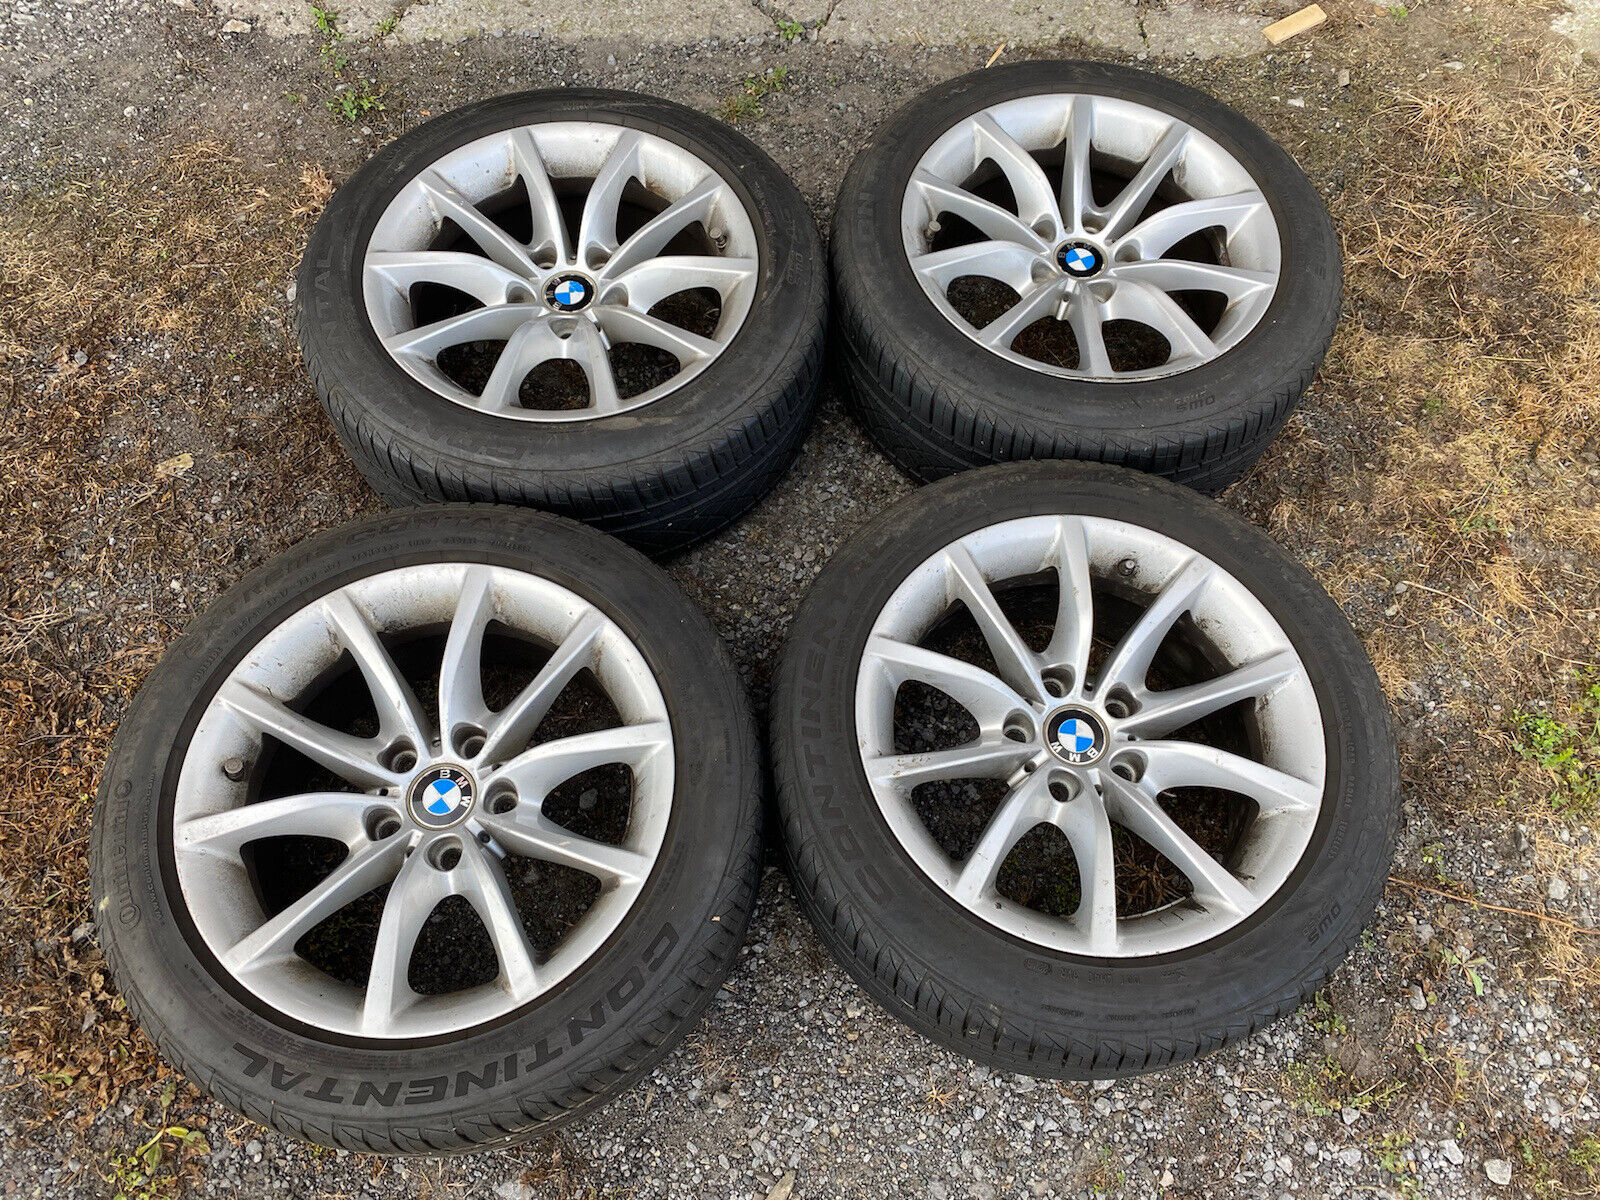 06-10 BMW 525i 528i 530i 535i 550i E60 17x8 10 Spoke Wheel Set W/Tires #812E